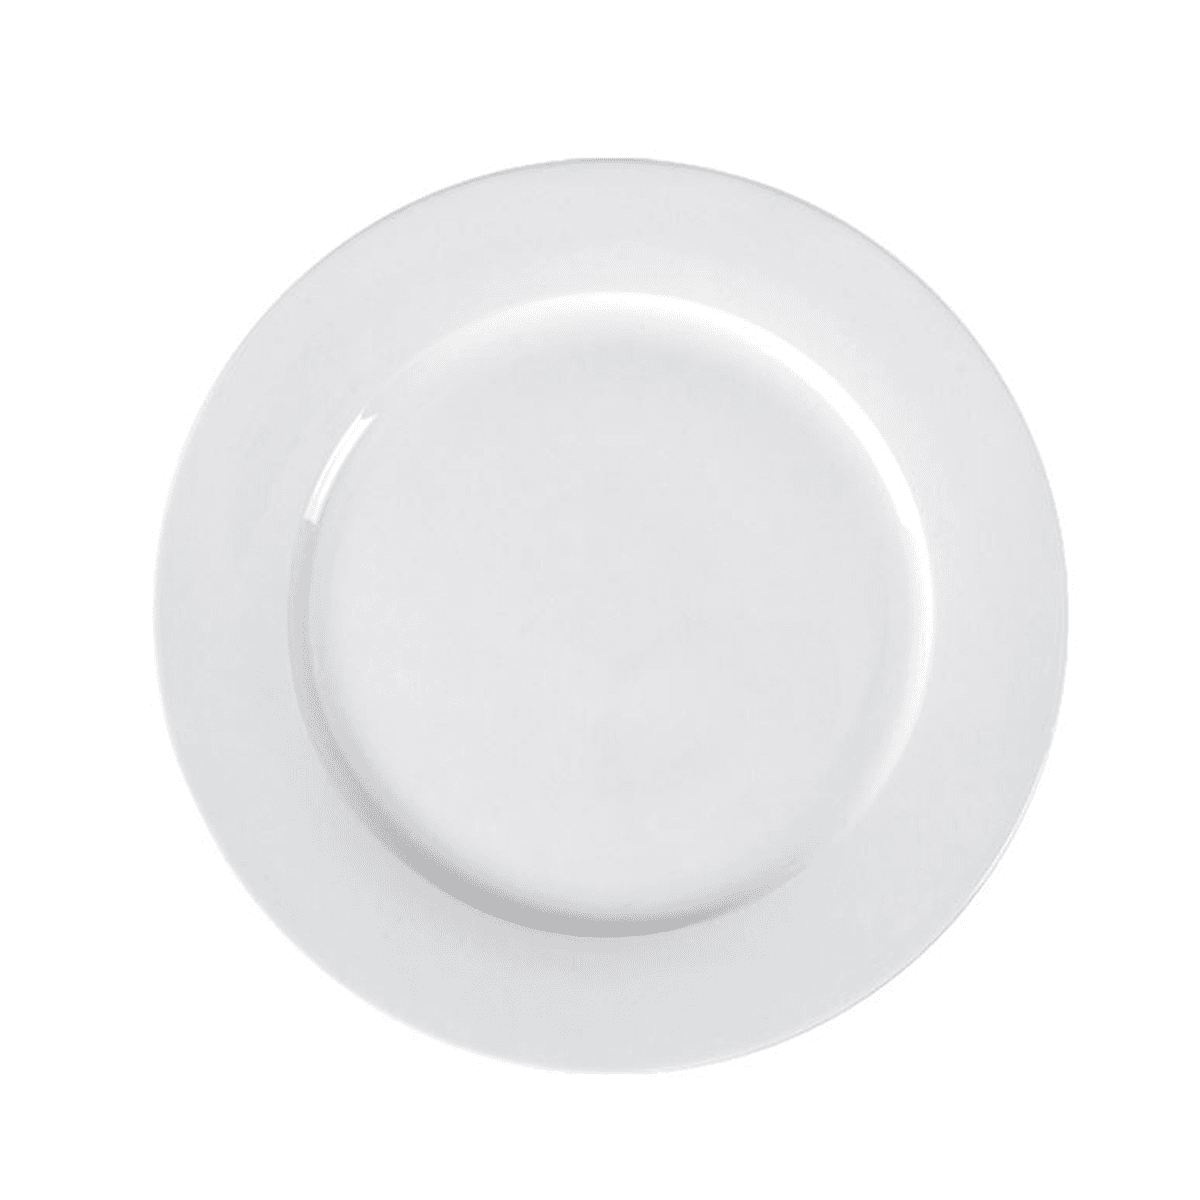 صحن مسطح بورسلان 18 سم 7 بوصة لون أبيض عاجي من بورسيلتا Porceletta Ivory Porcelain Flat Plate